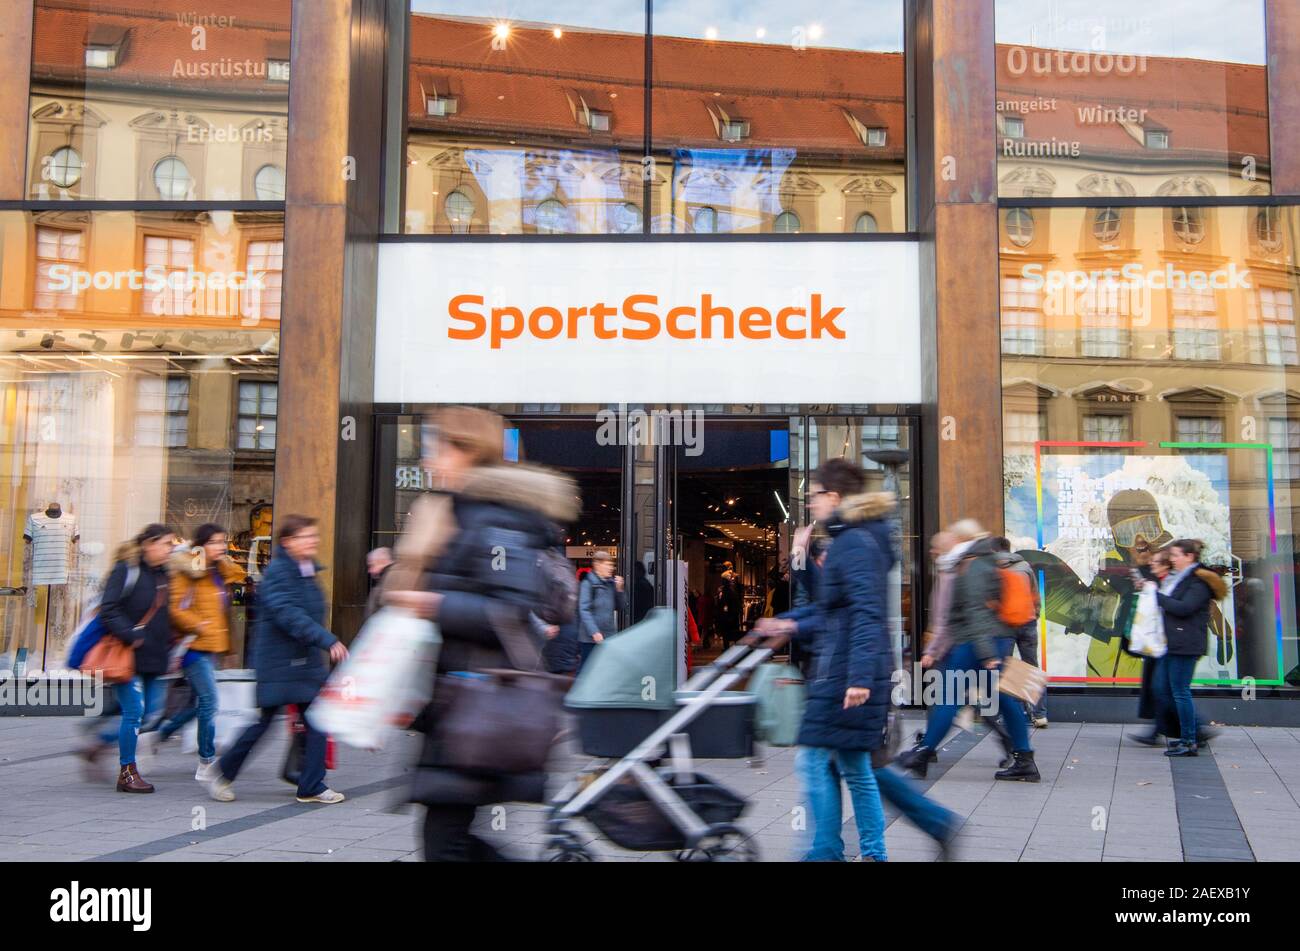 Sport Scheck Stockfotos und -bilder Kaufen - Alamy